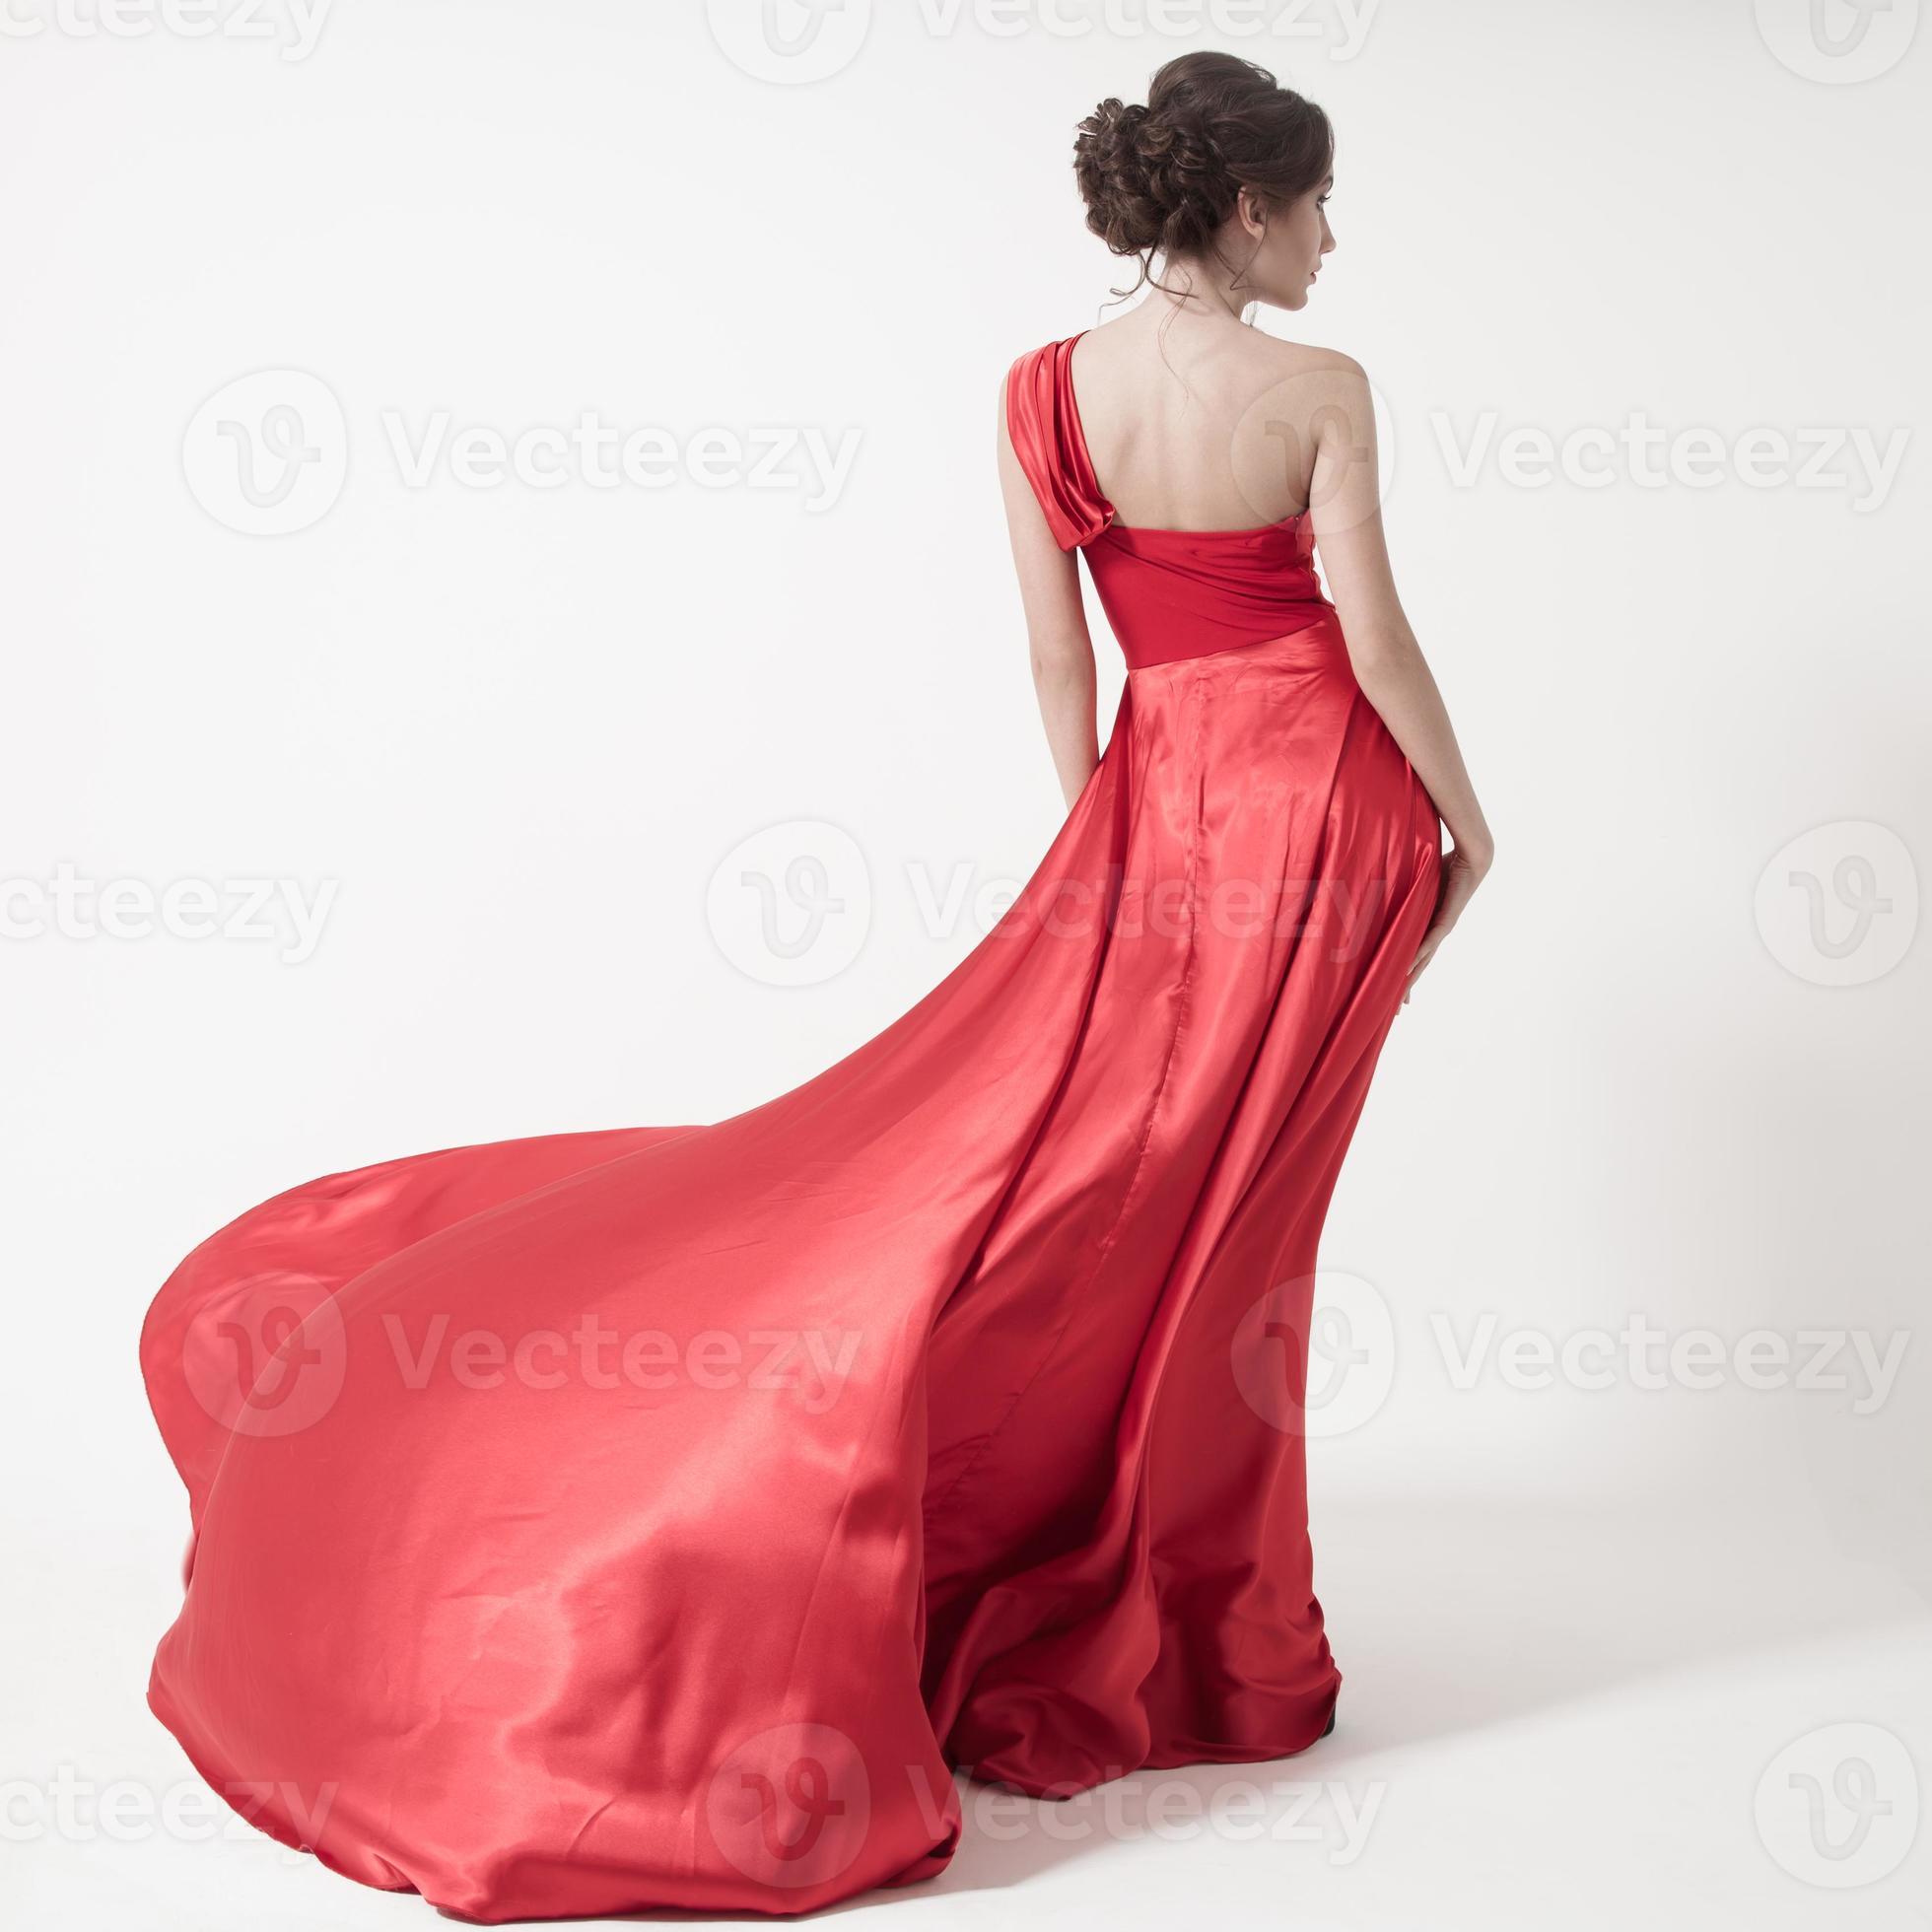 jonge schoonheid vrouw in fladderende rode jurk. witte achtergrond. foto